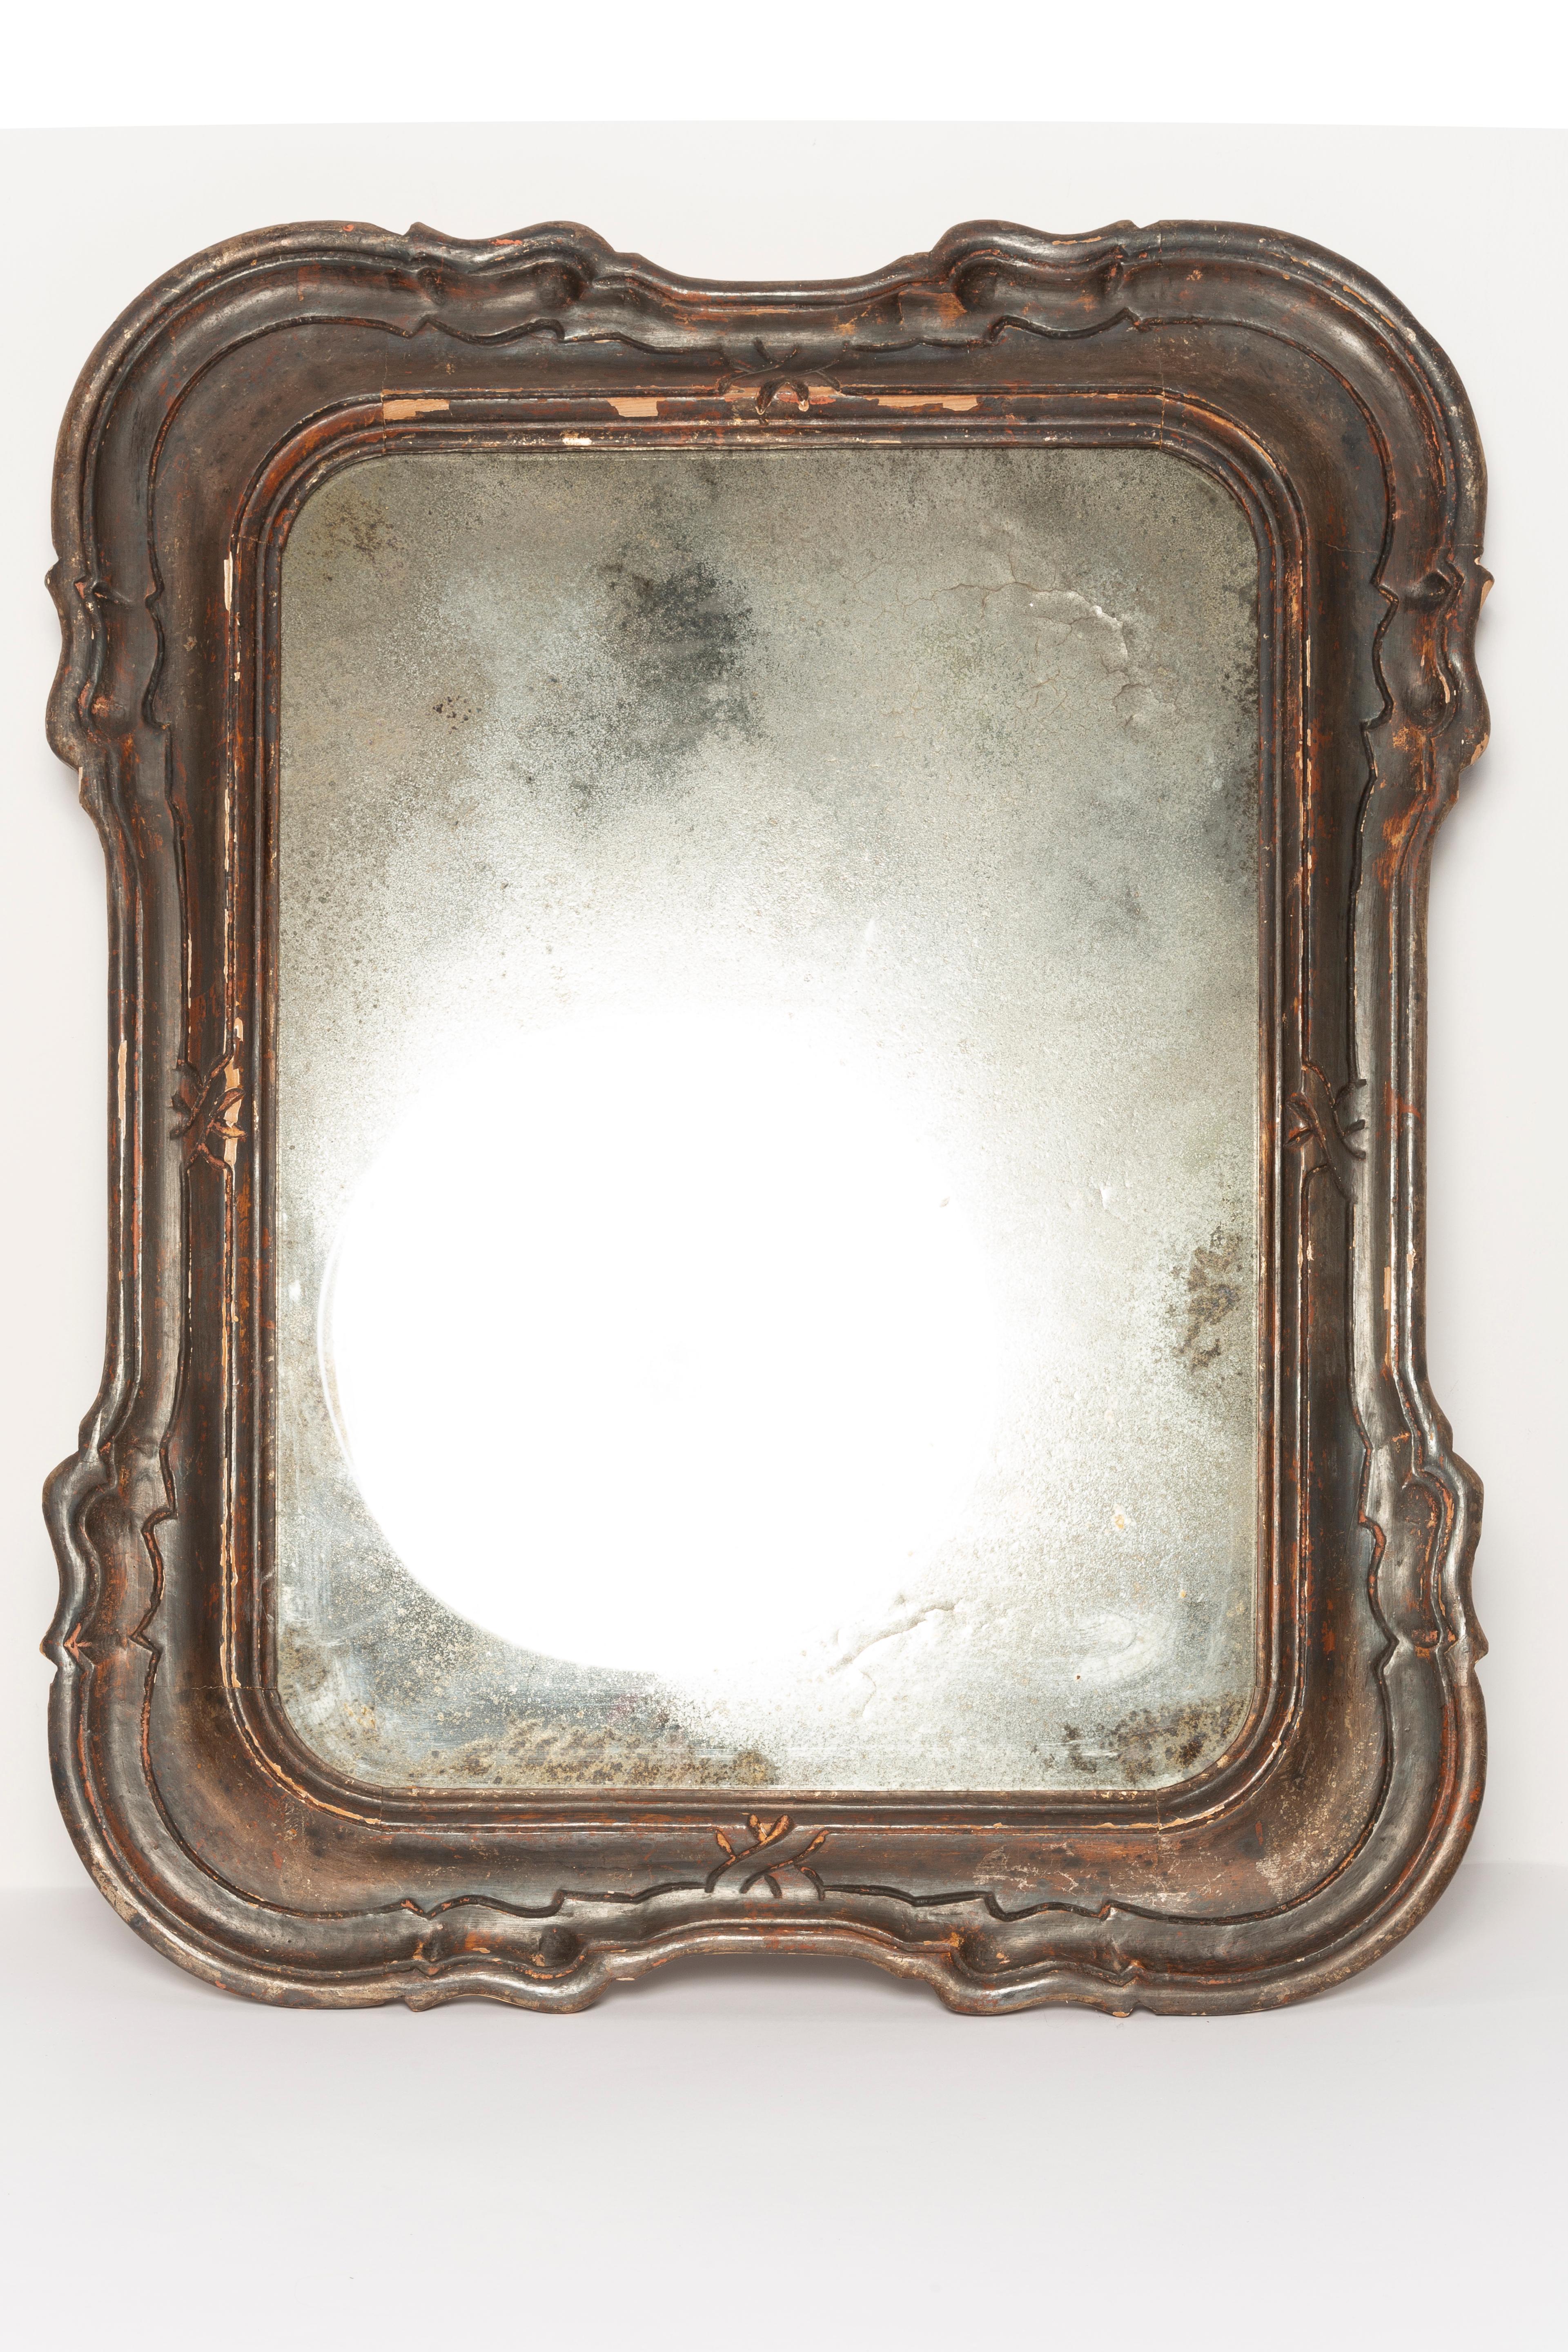 patina on mirror